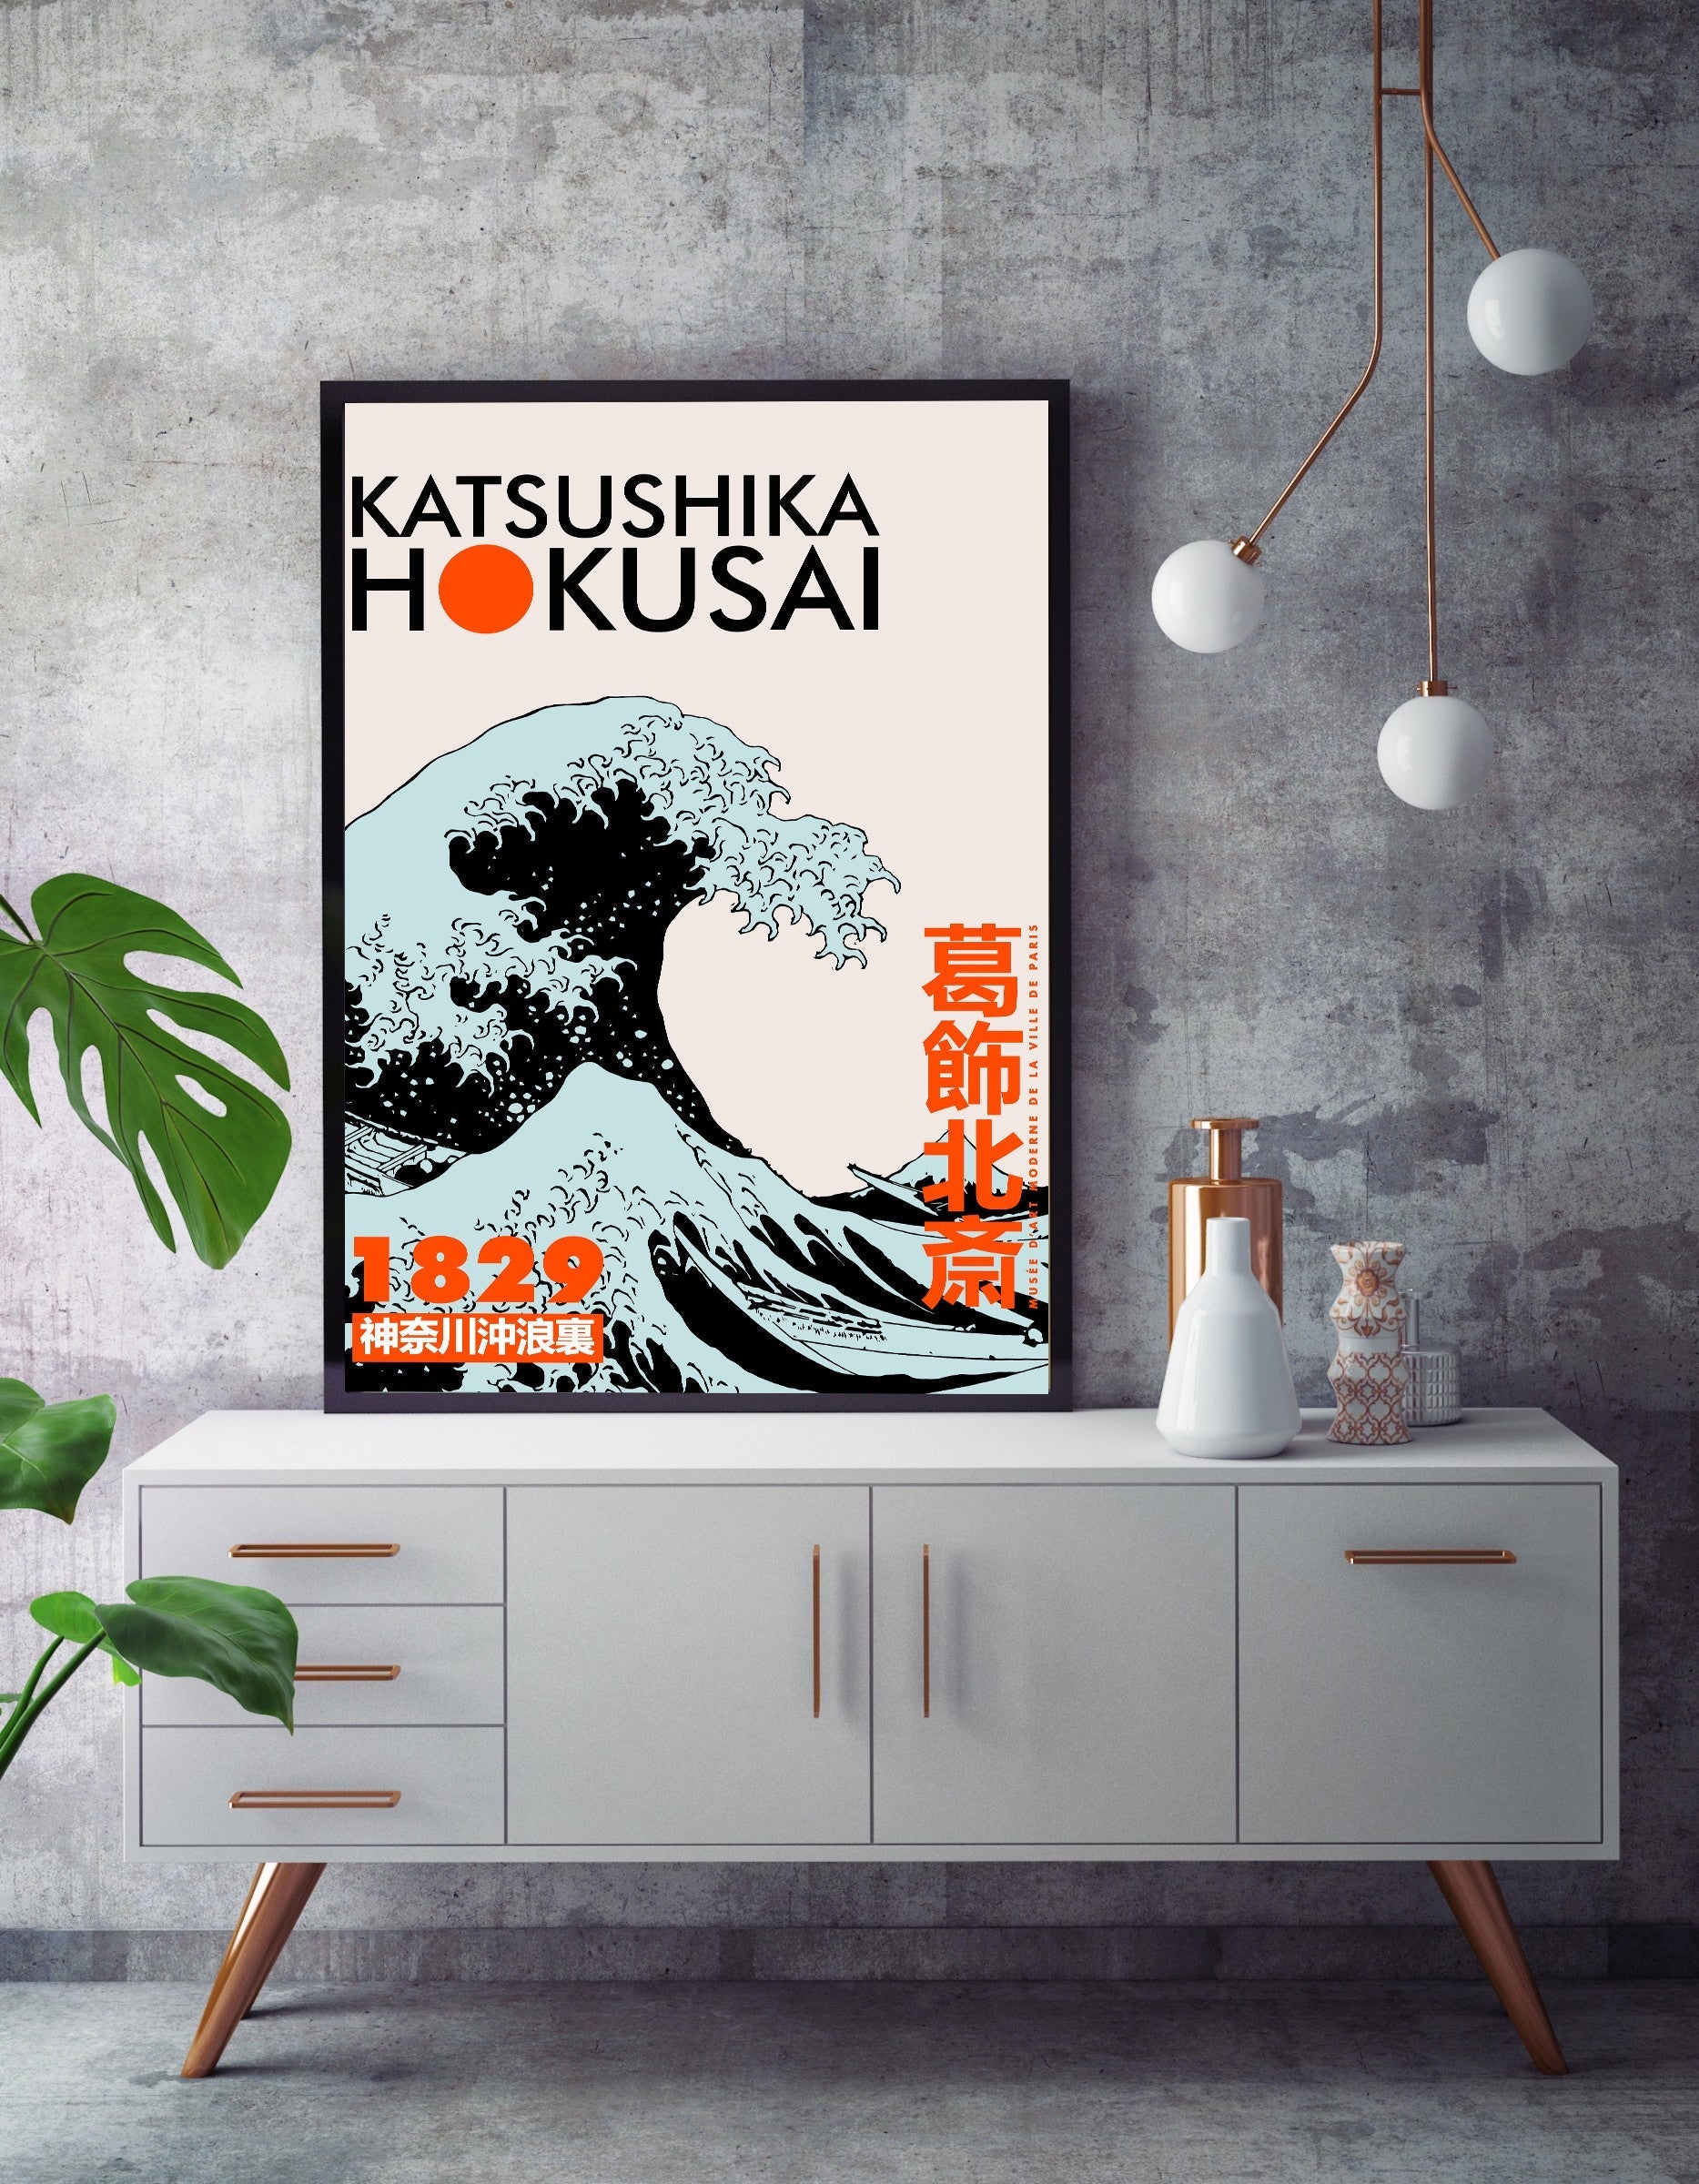 Katsushika Hokusai 1829-expositions, print-BLUE SHAKER